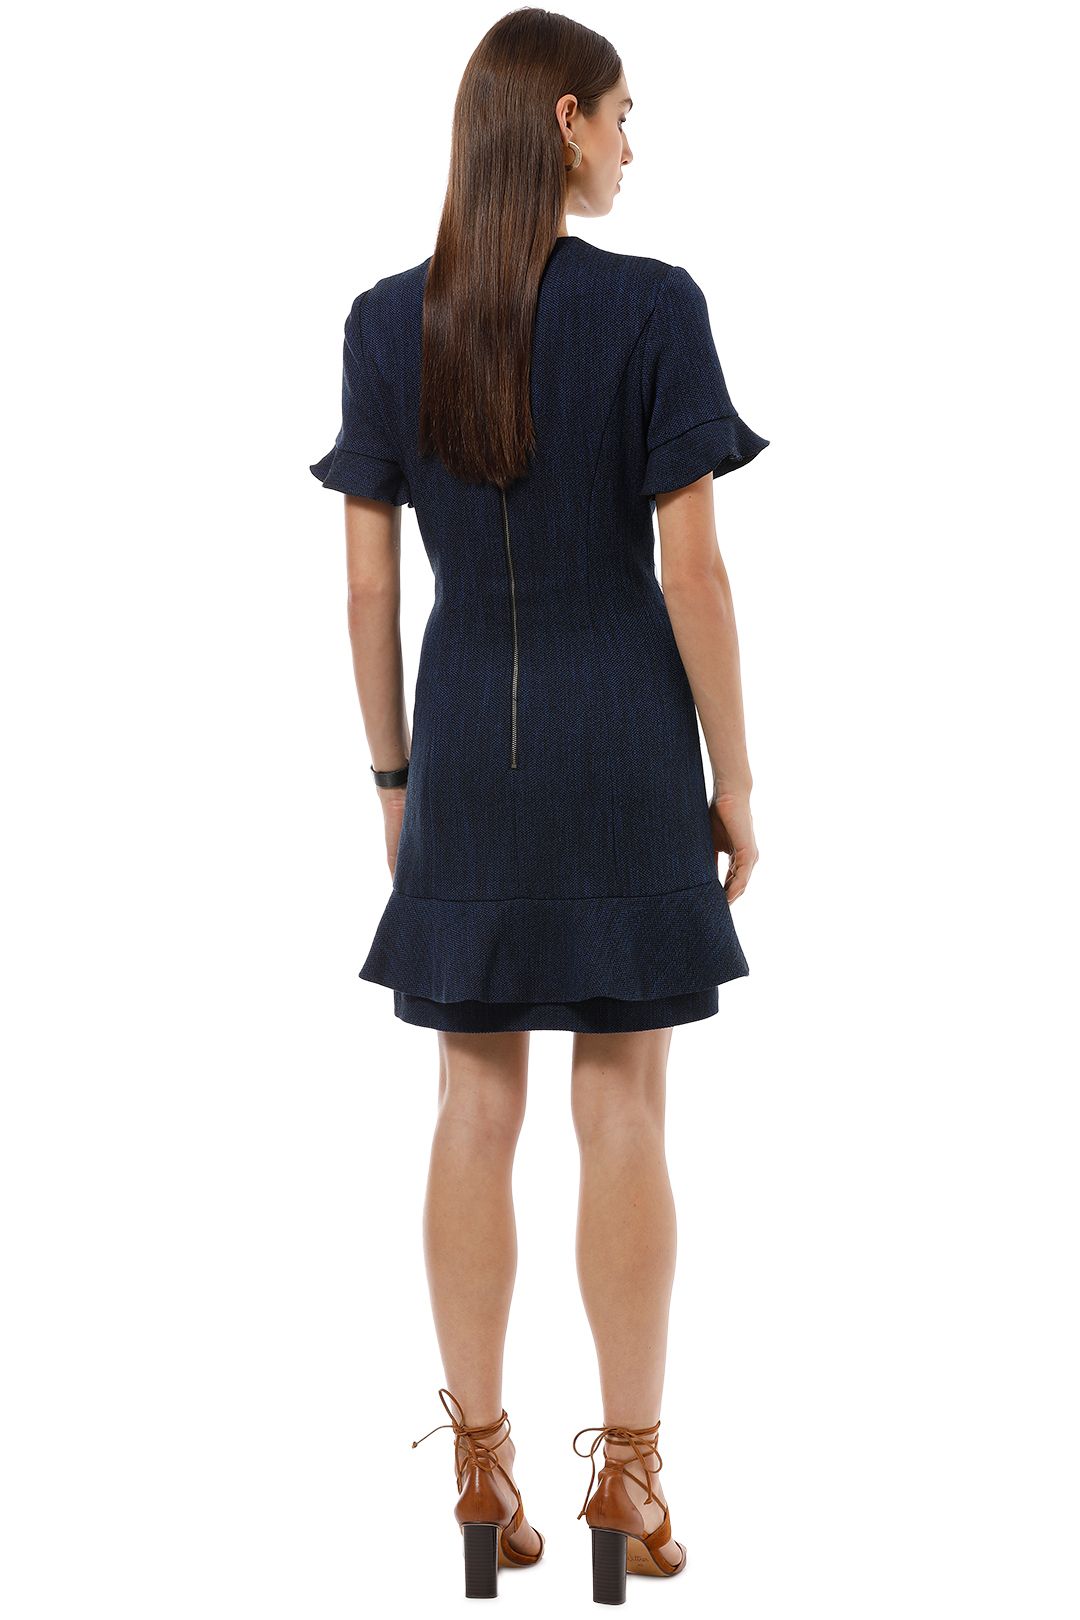 Cue - Tweed Asymmetric Frill Dress - Blue - Back